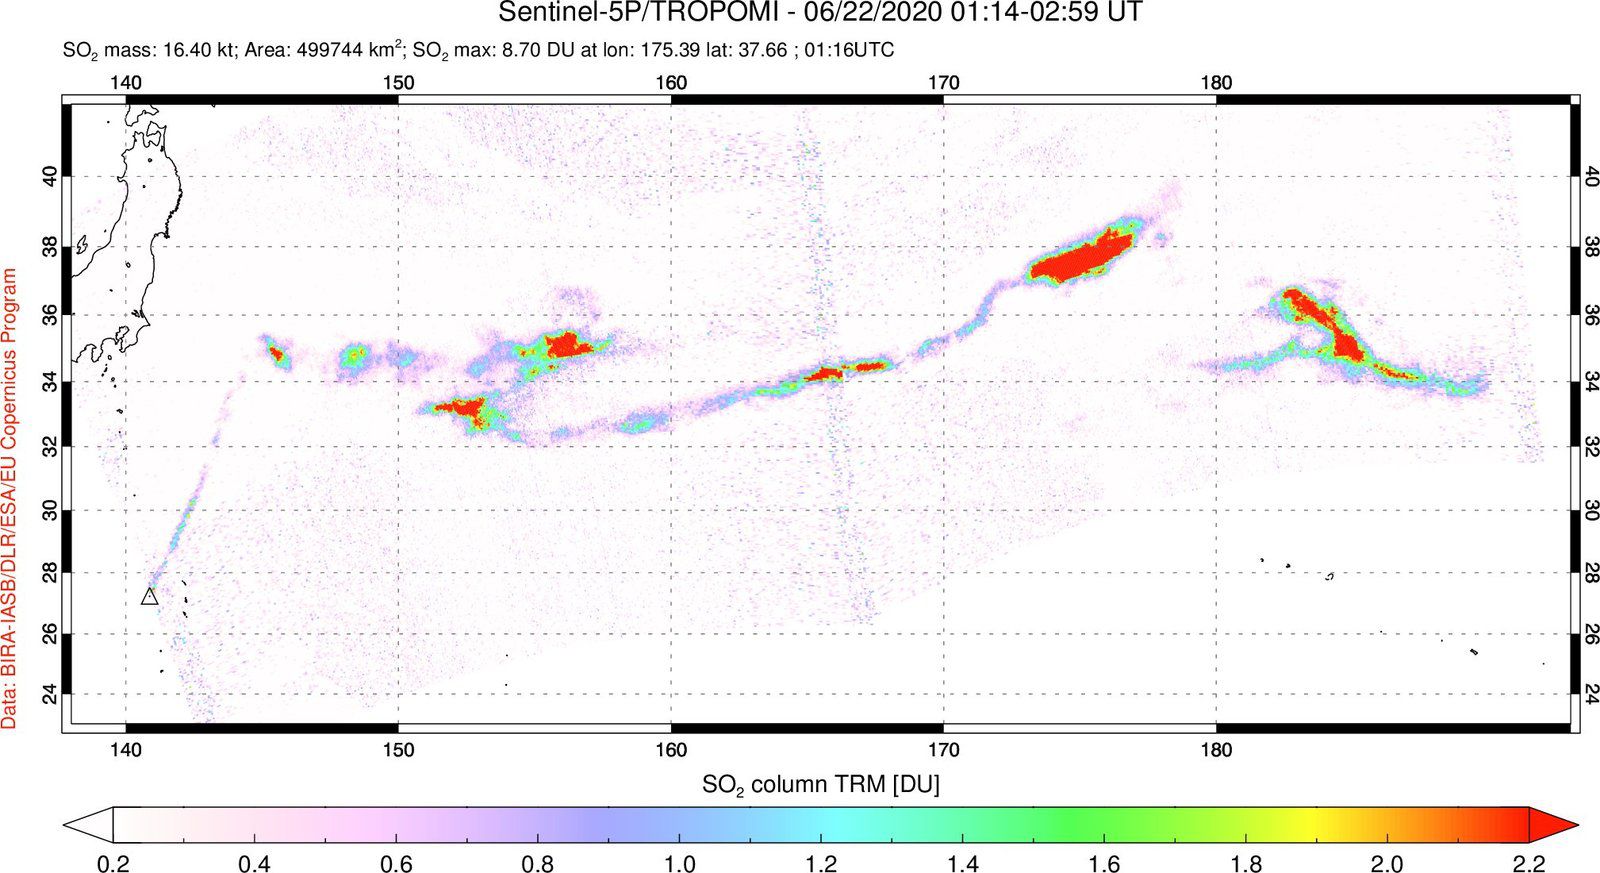 Nishinoshima - panache de SO2 sur ces images Sentinel-5P / Tropomi des 21 et 22.06.2020 - Doc. Tropomi / via Simon Carn 